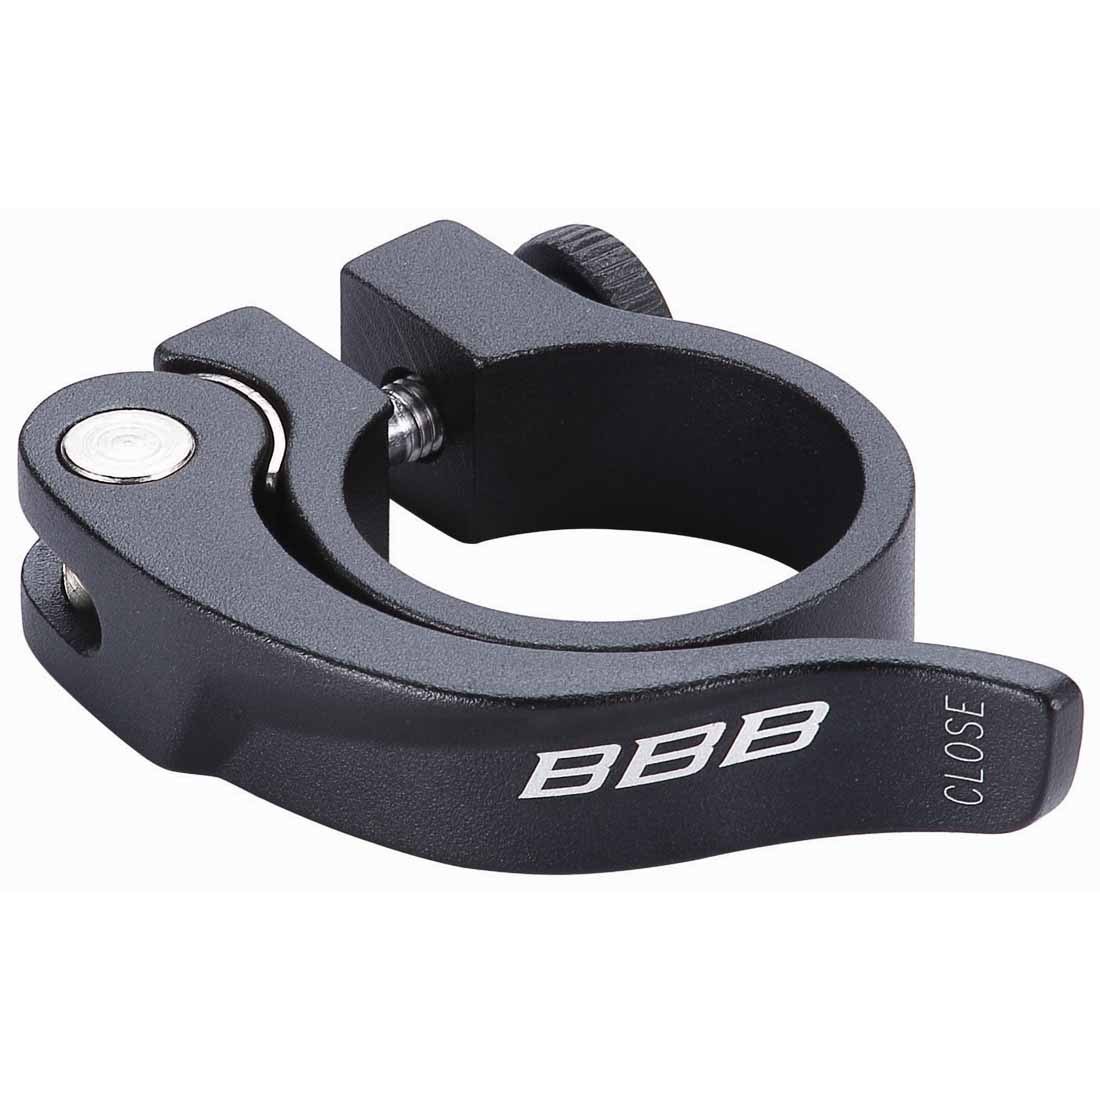 Produktbild von BBB Cycling SmoothLever BSP-87 Sattelklemme - schwarz